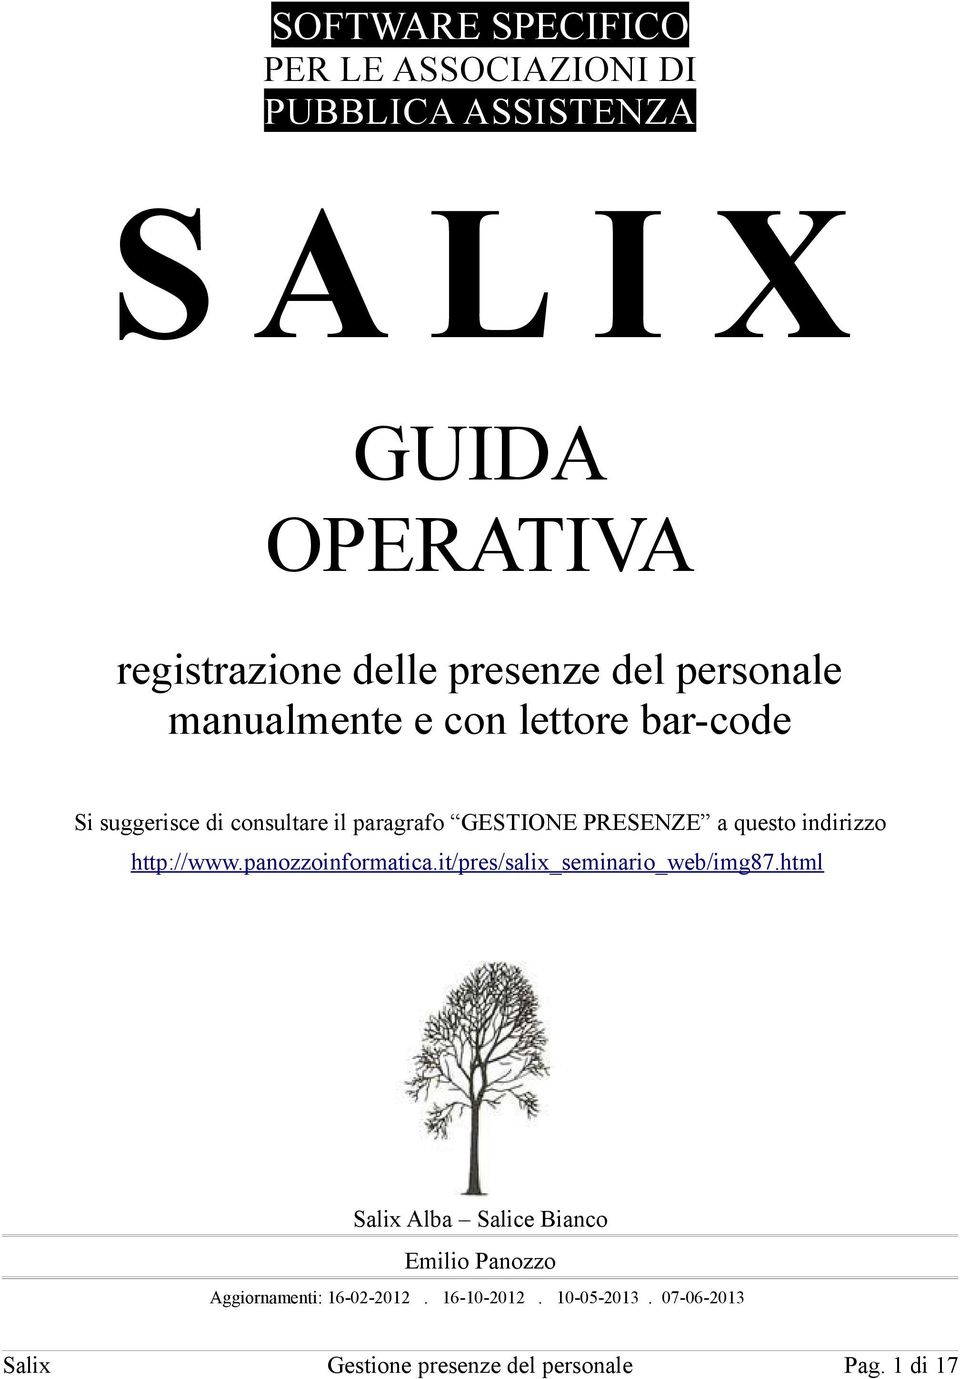 indirizzo http://www.panozzoinformatica.it/pres/salix_seminario_web/img87.